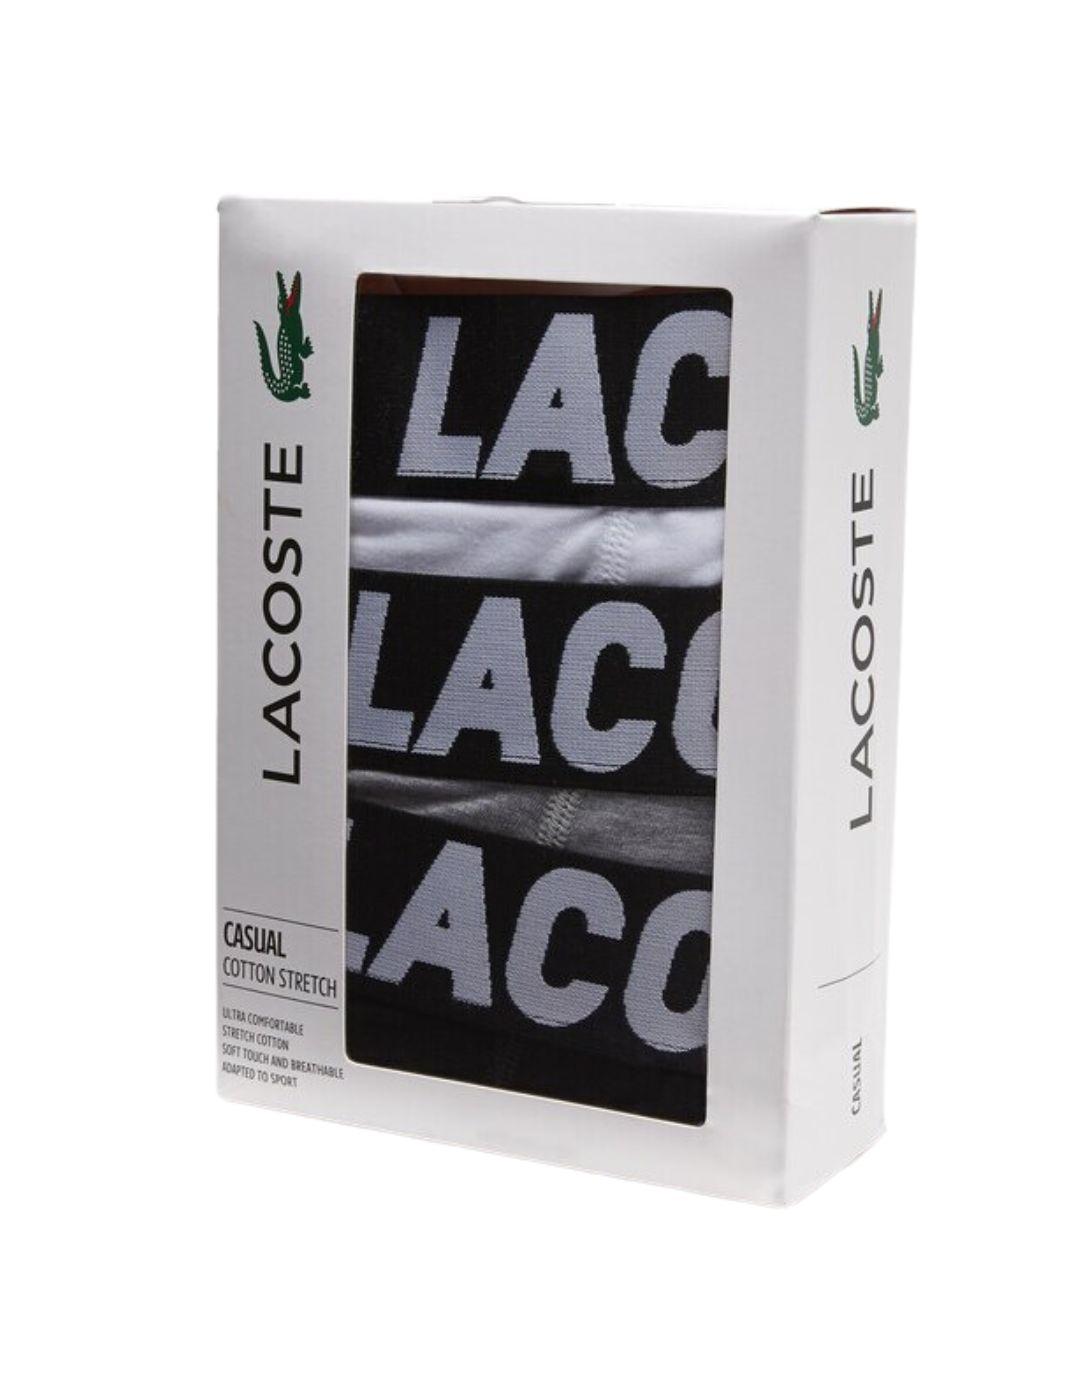 Pack de 3 calzoncillos Lacoste en algodón elástico